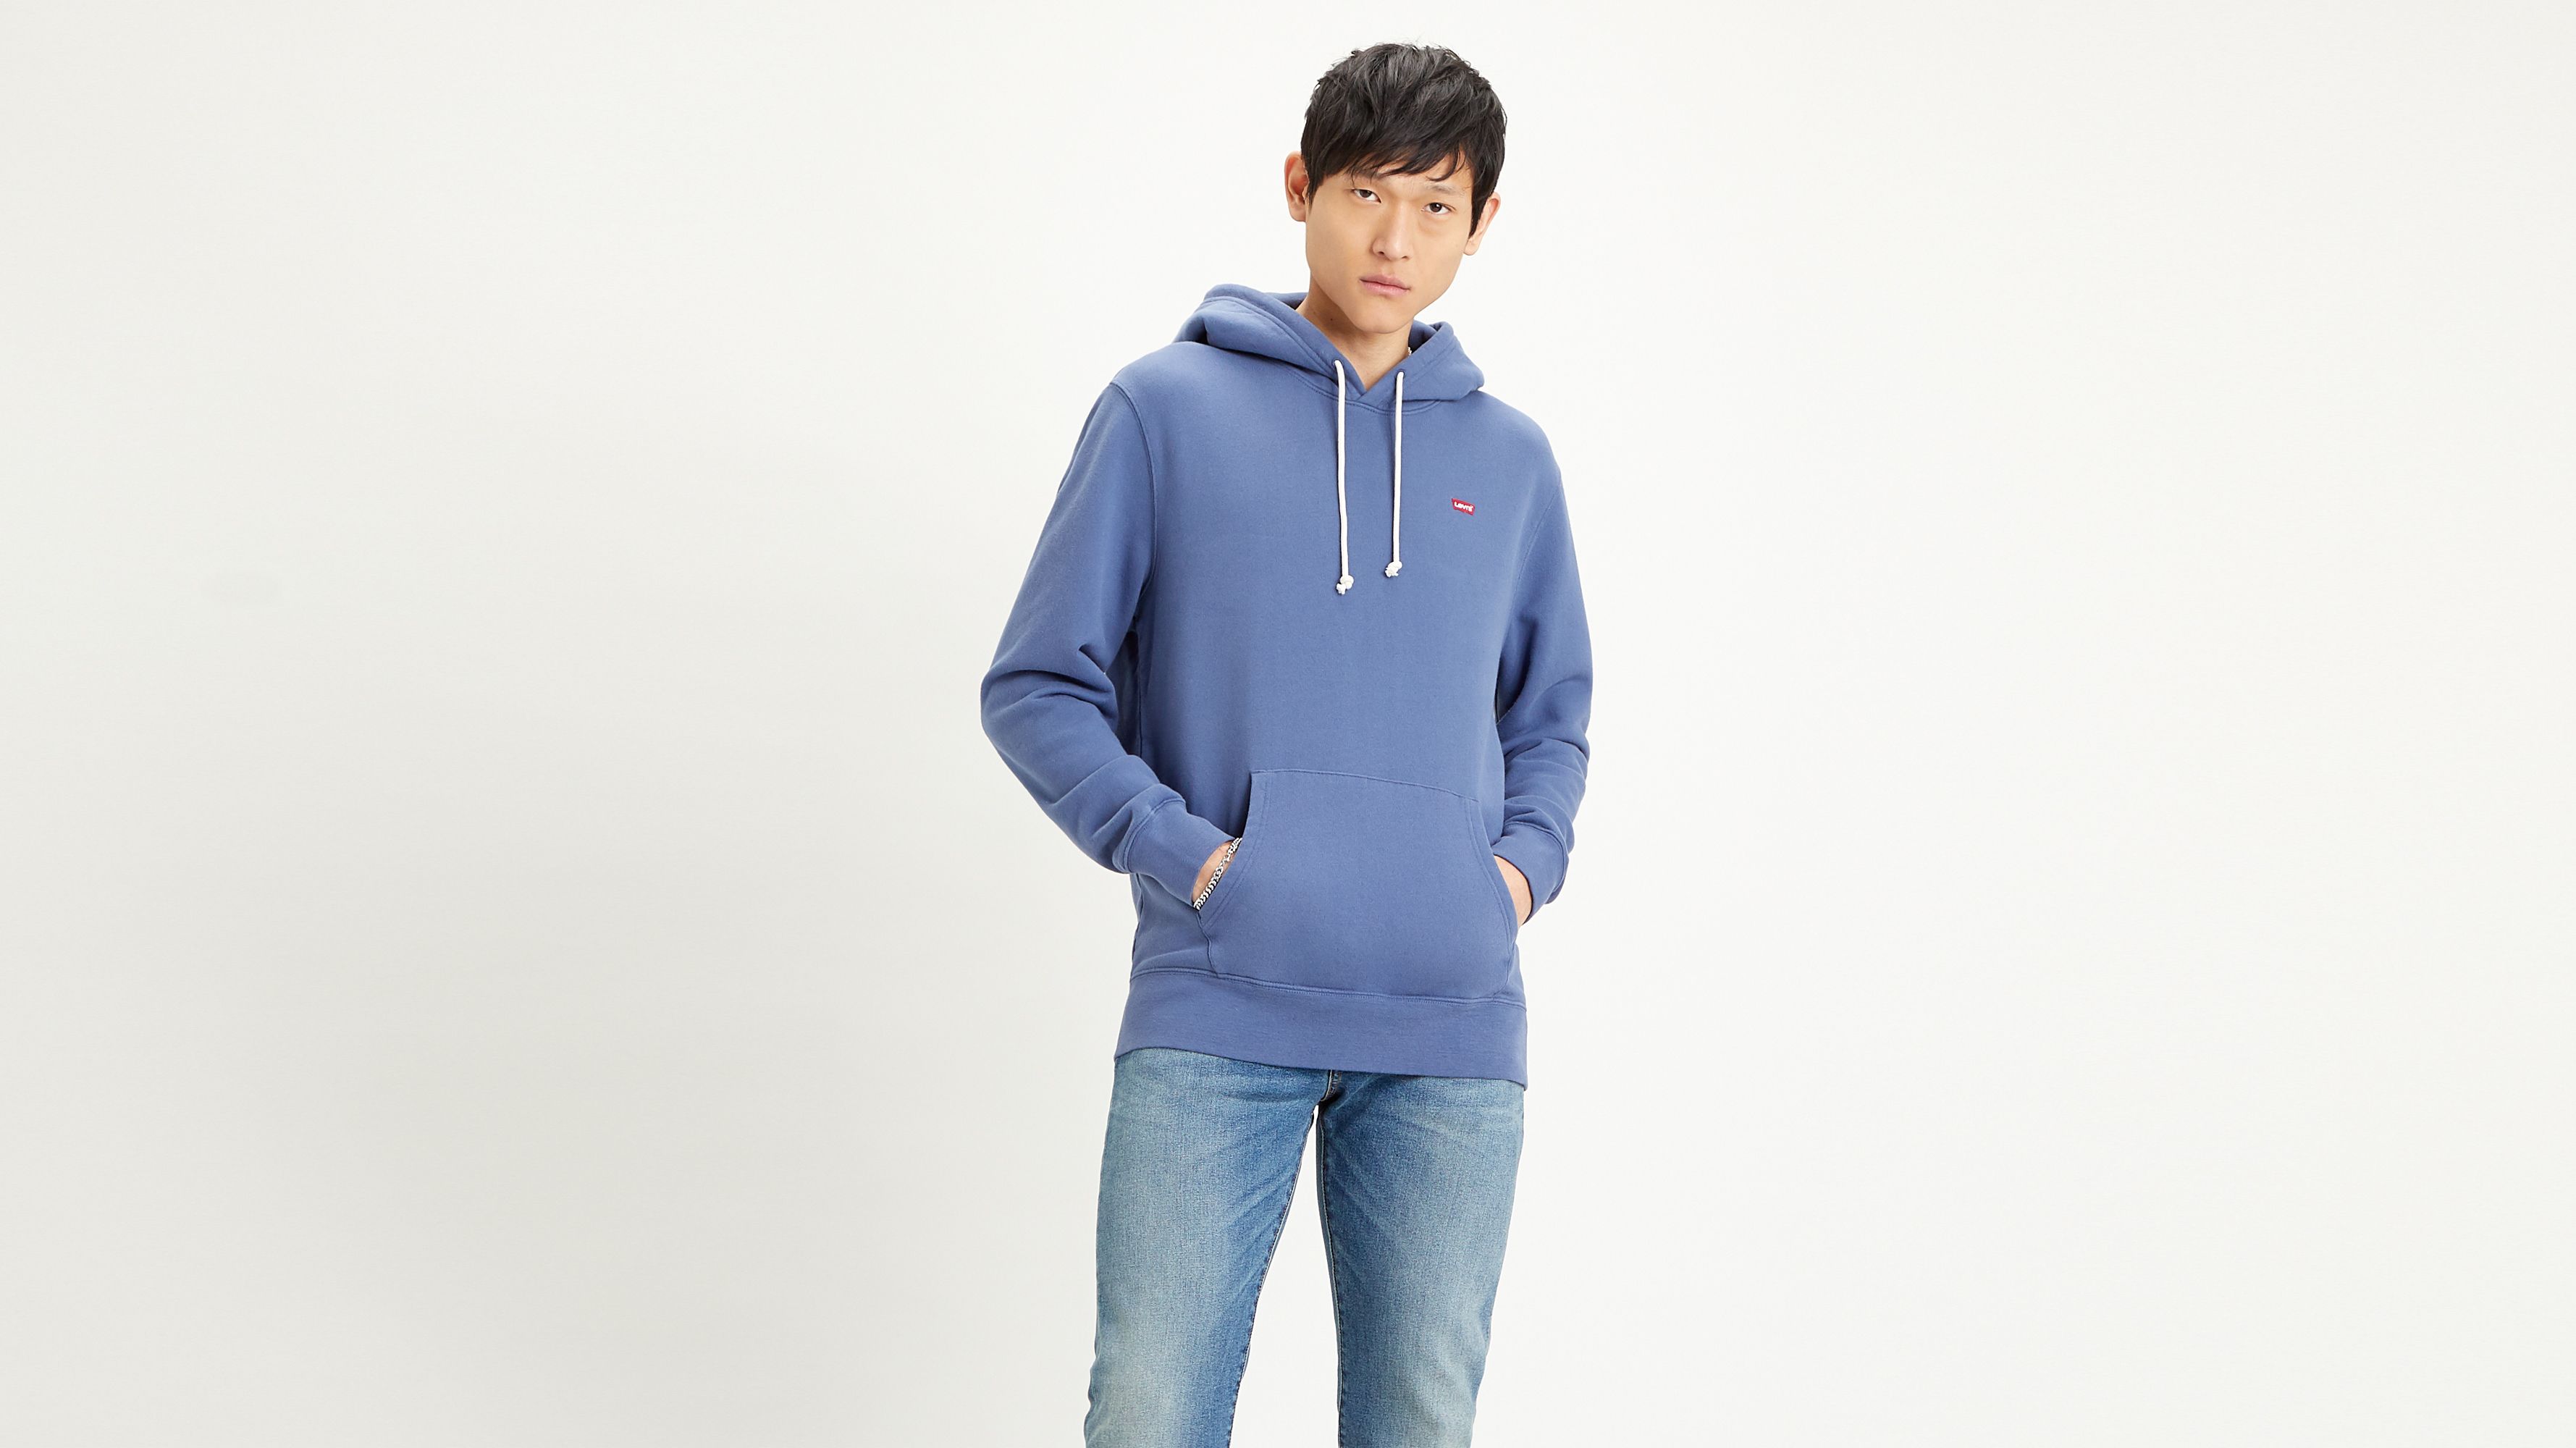 levis hoodie blue